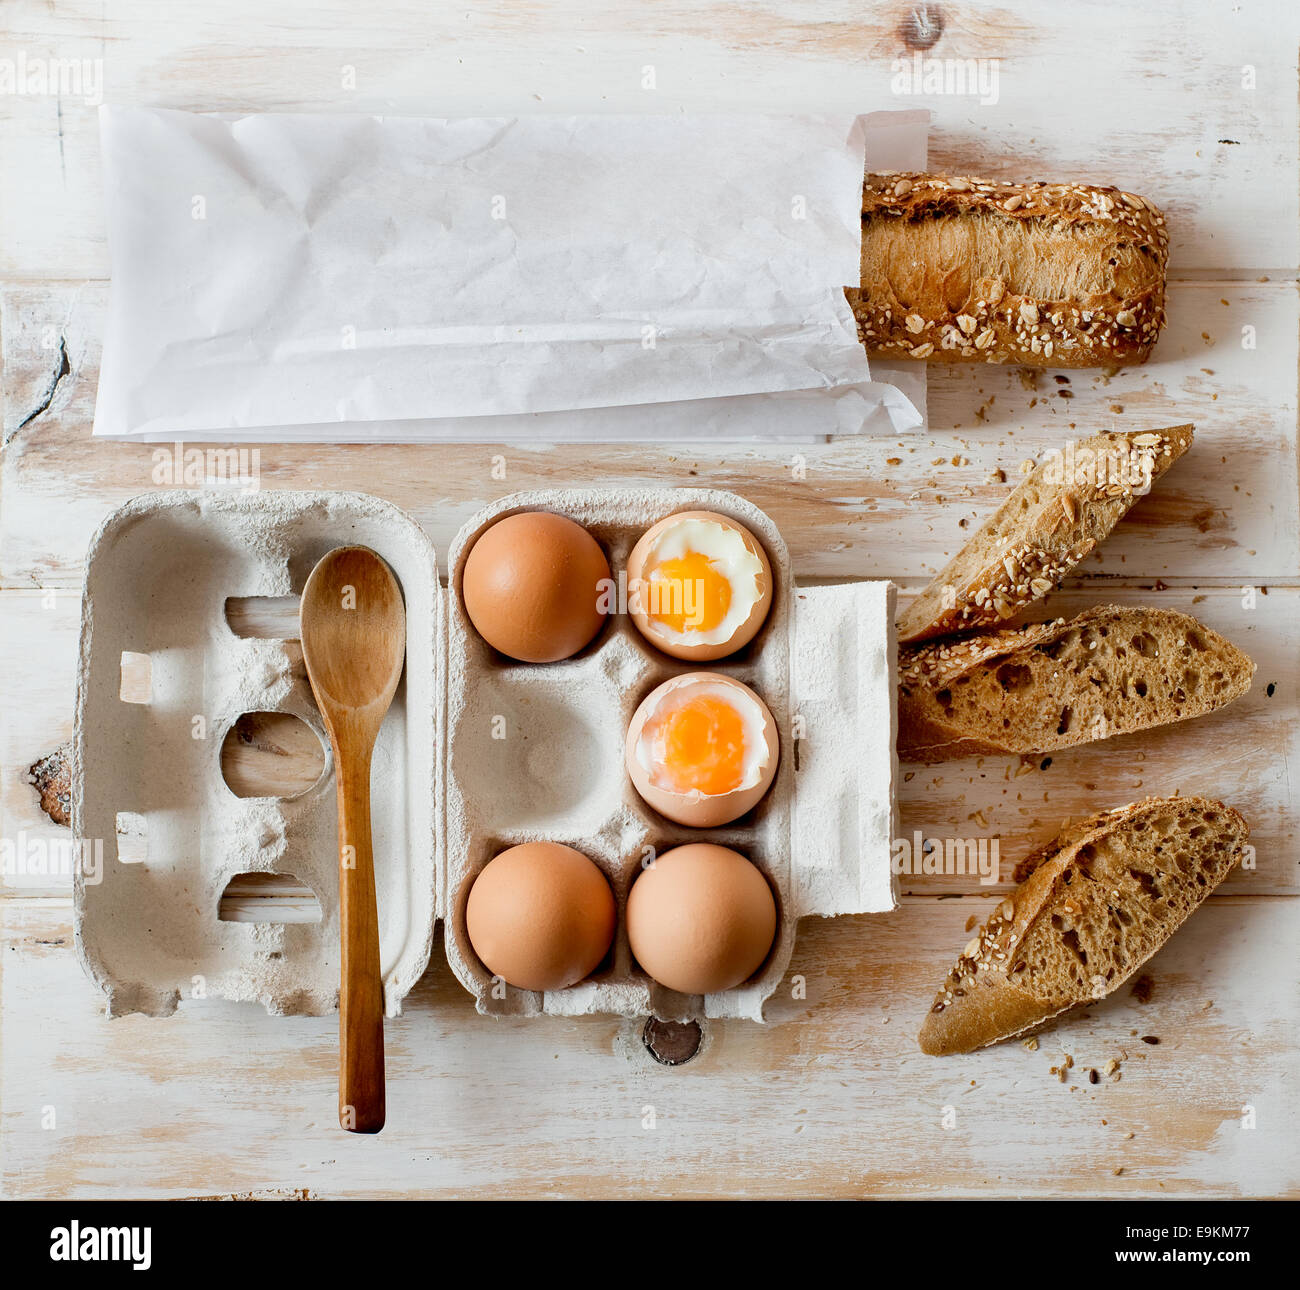 Uova bollite in una cassa scatola di cartone e pane integrale su un tavolo rustico. Foto Stock